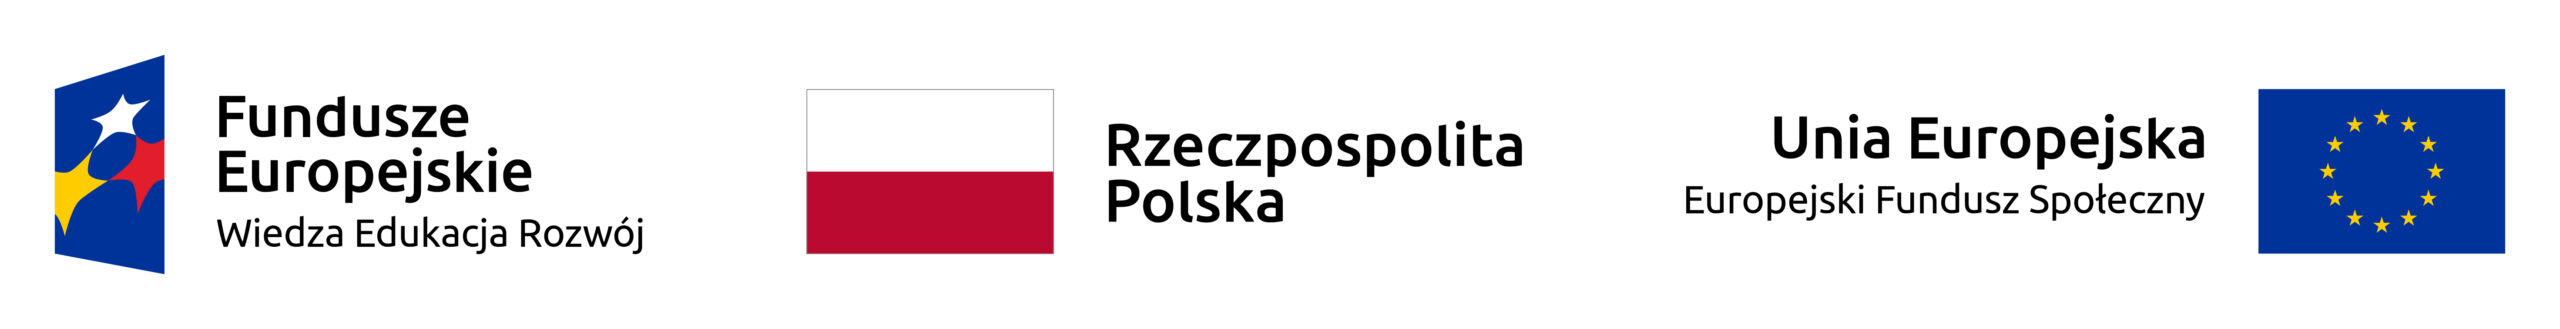 Loga funduszy europejskich, Unii Europejskiej i flaga Polski.